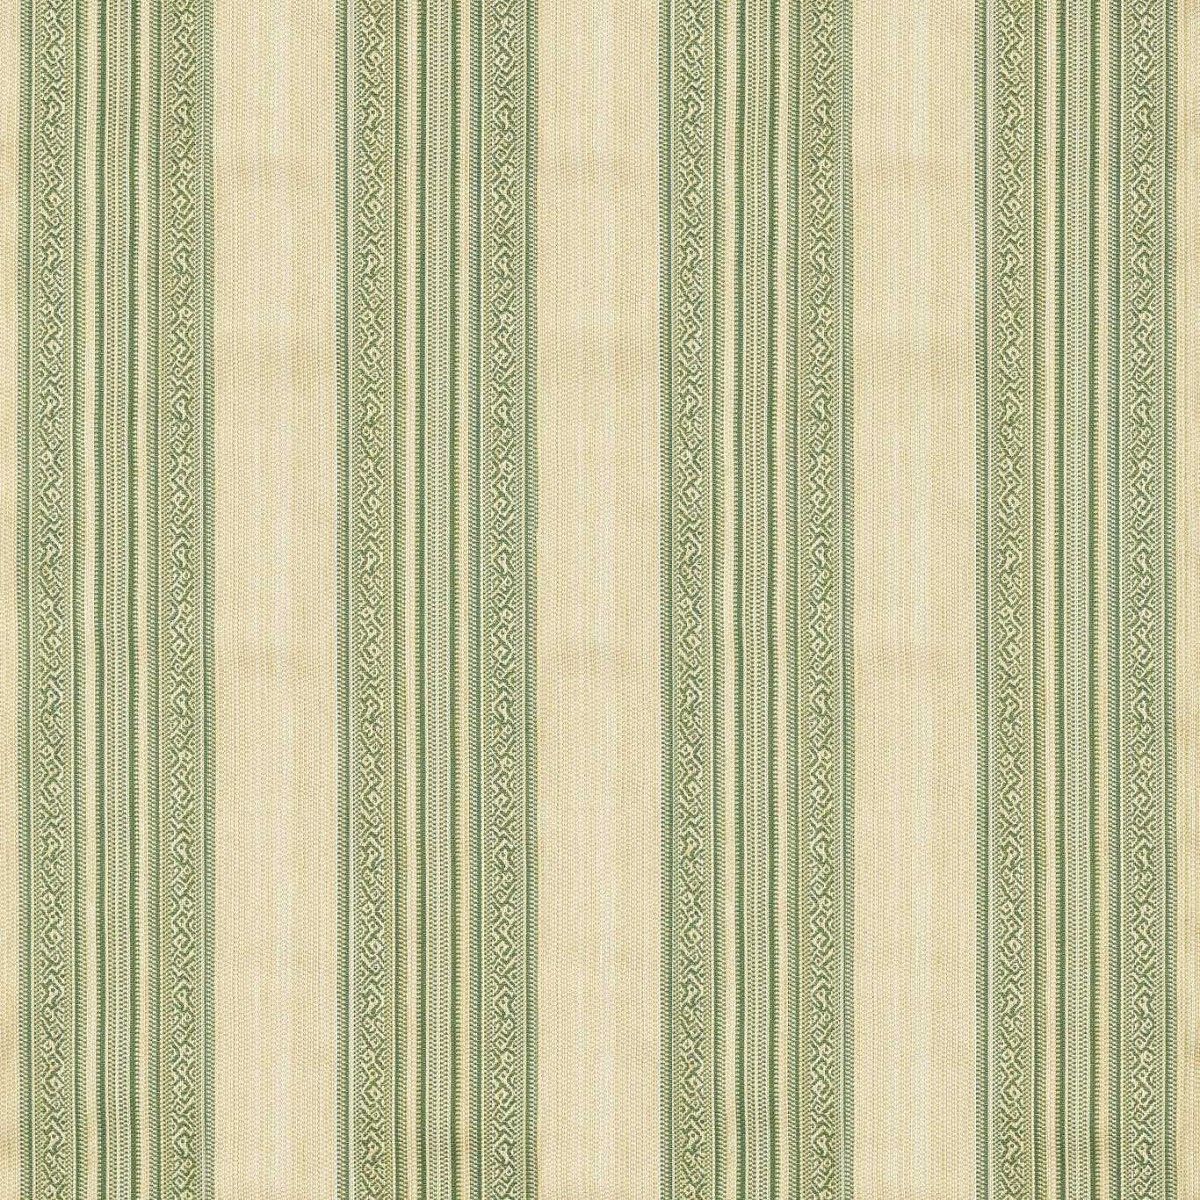 Hanover Stripe Evergreen Fabric by Zoffany